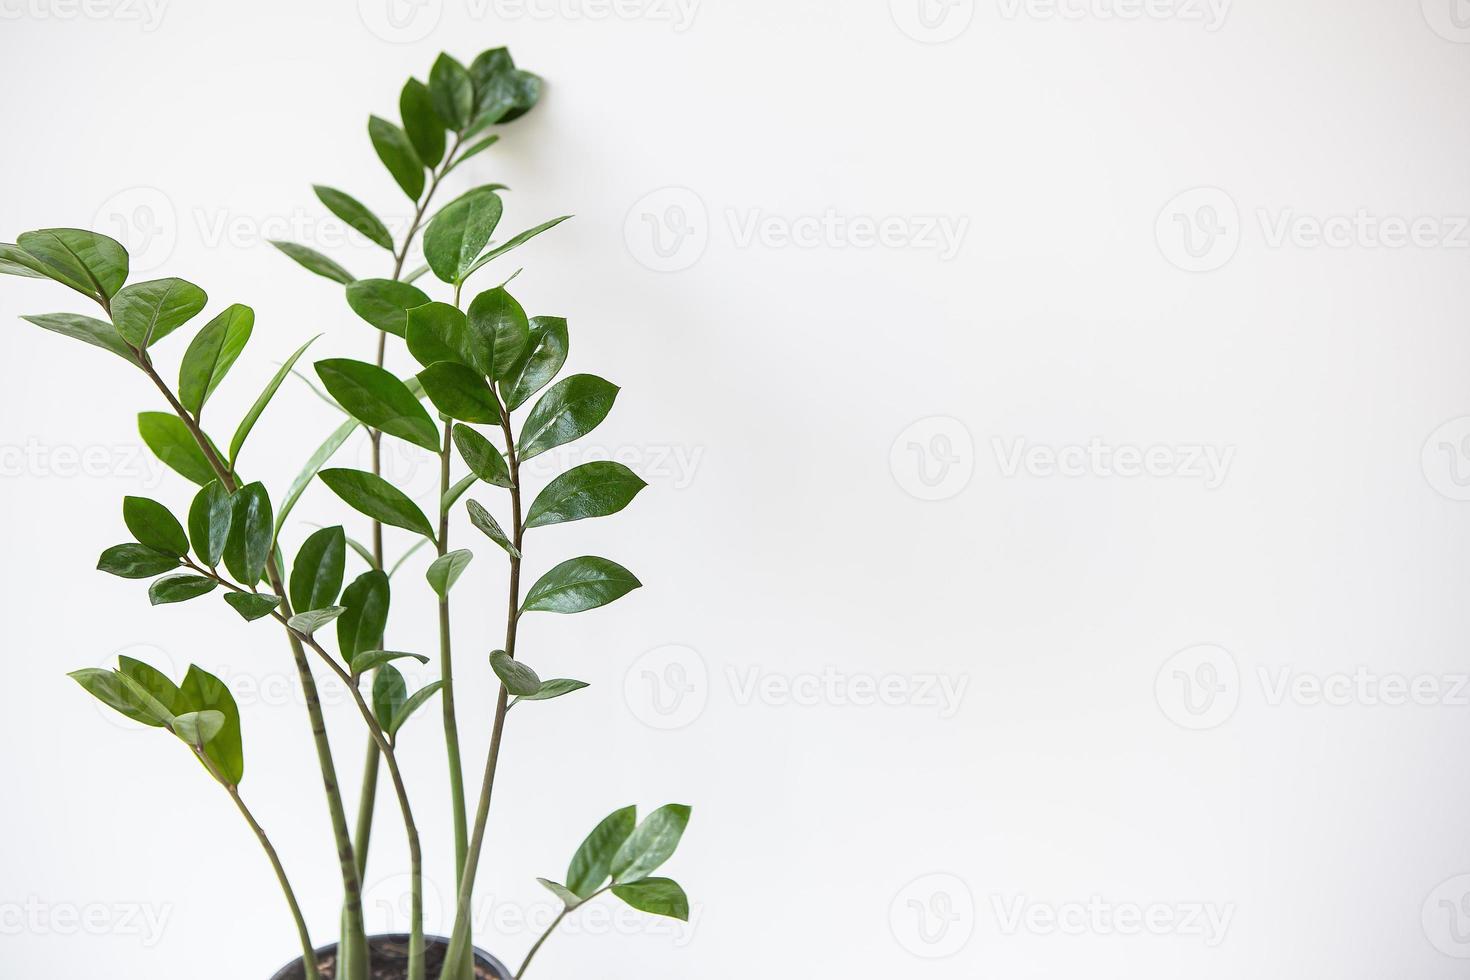 concepto de jardinería. foto vertical de una planta de interior zamioculcas que crece en una maceta blanca. banner, lugar para texto.